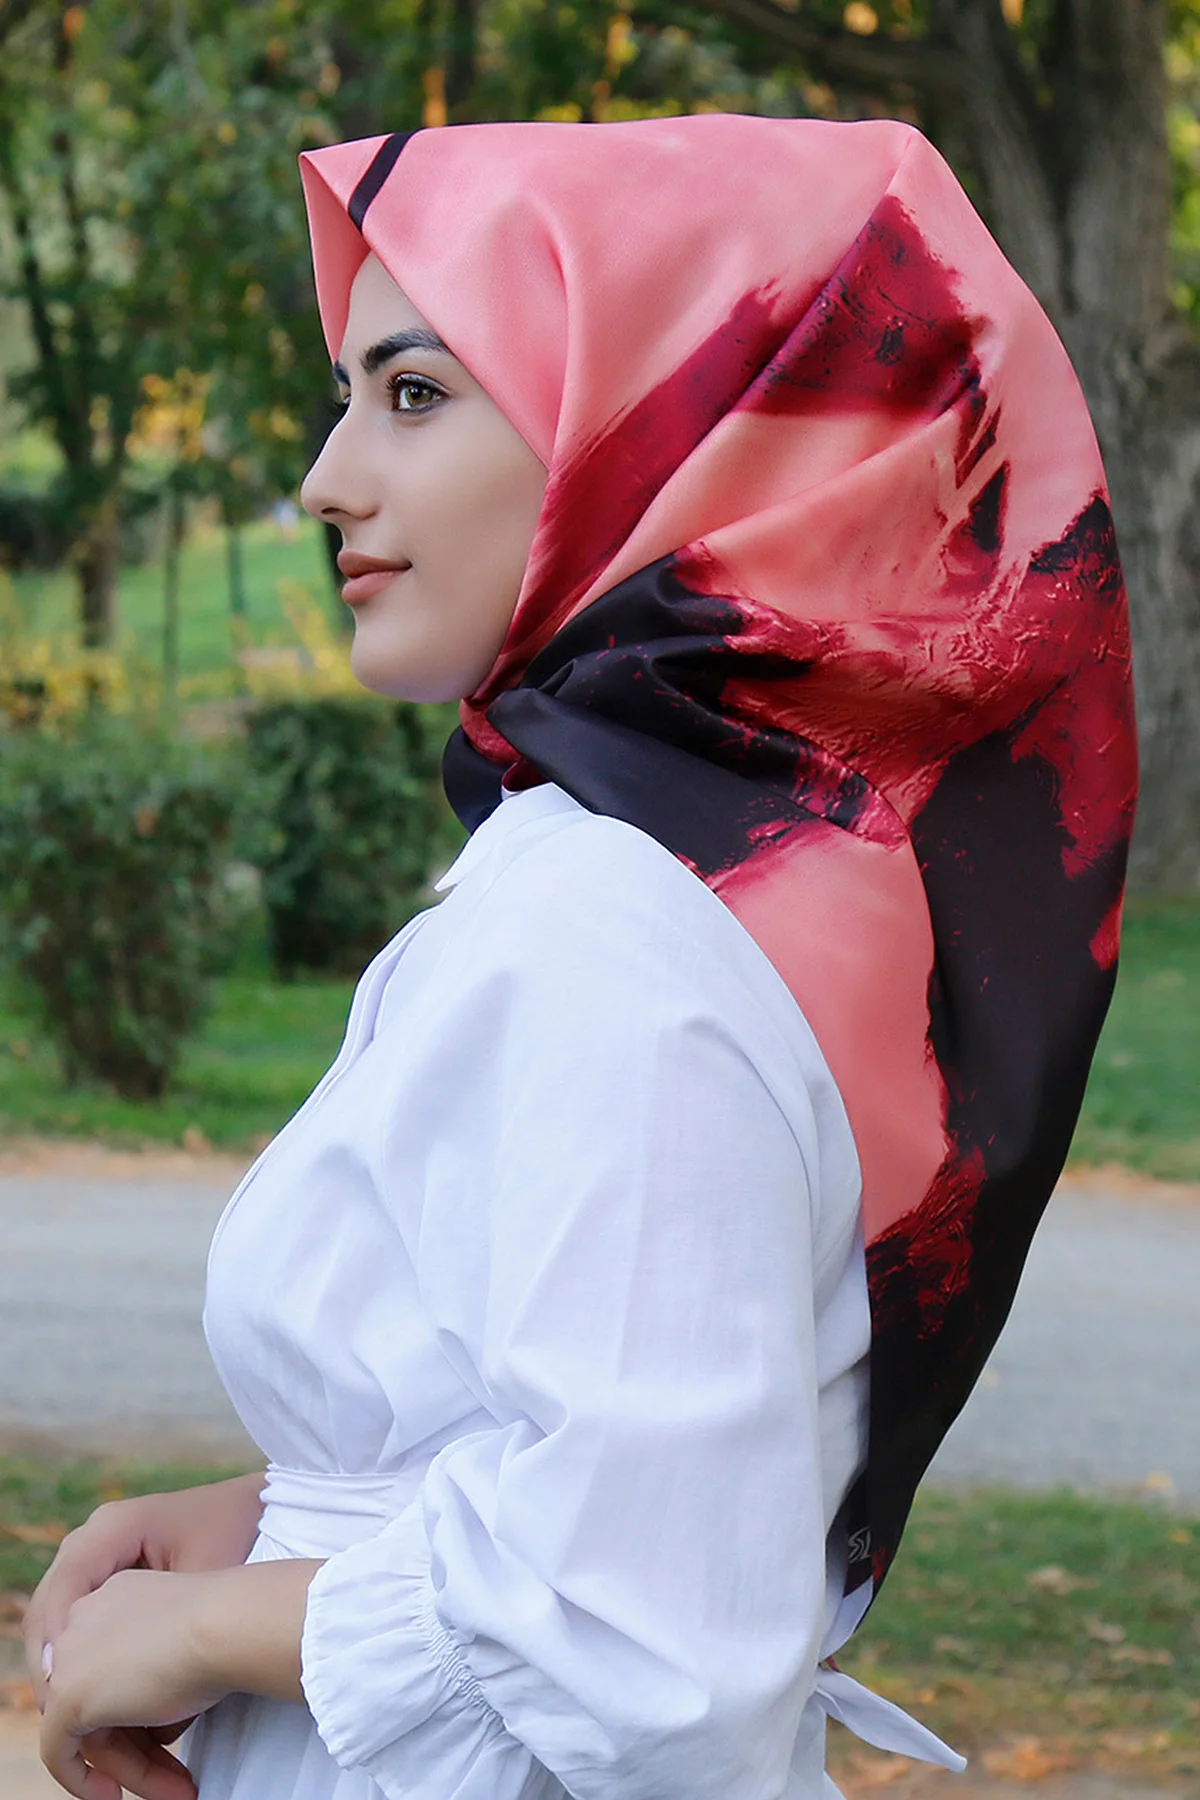 С рисунком Для женщин шарфы мусульманский женский хиджаб Для женщин хиджаб качество шелковый шарф бандана шляпа от AliExpress RU&CIS NEW